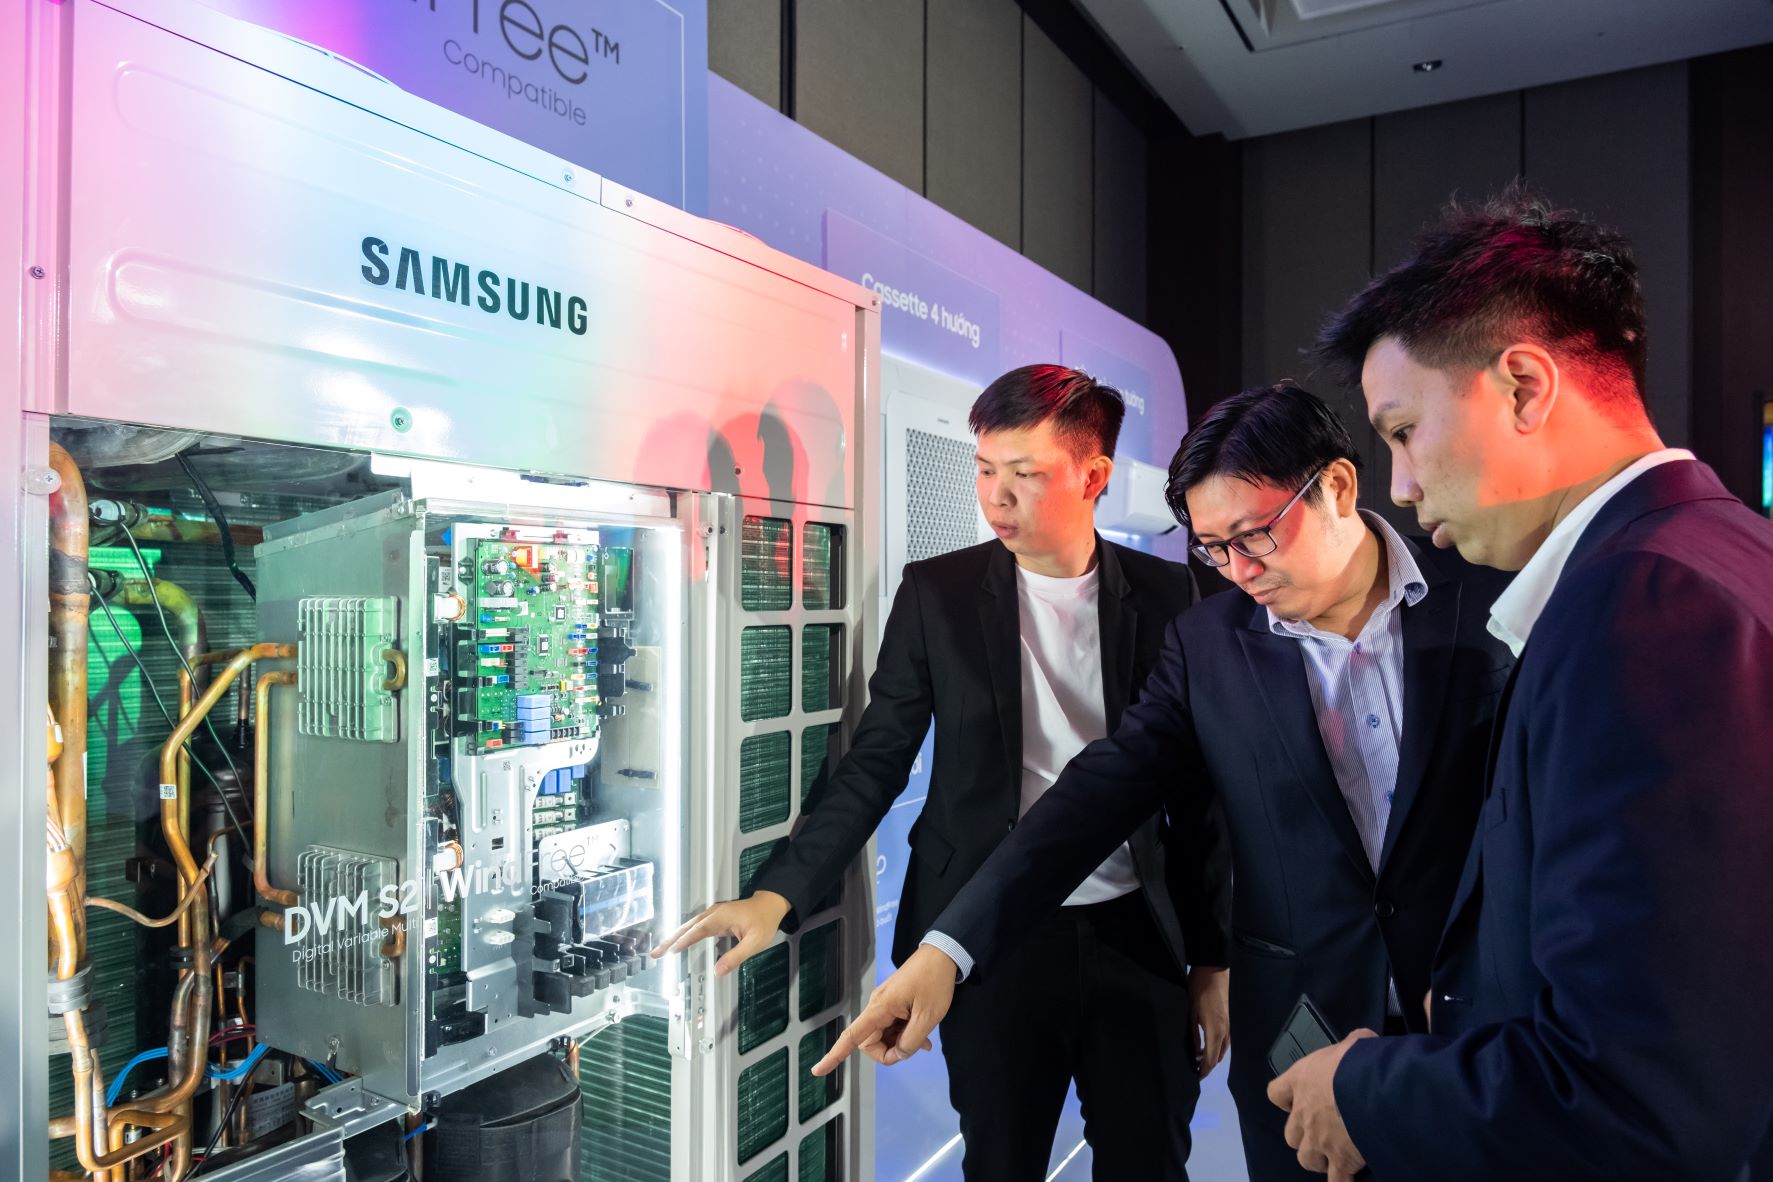 Samsung ra mắt điều hòa không khí trung tâm VRF thế hệ mới DVM S2